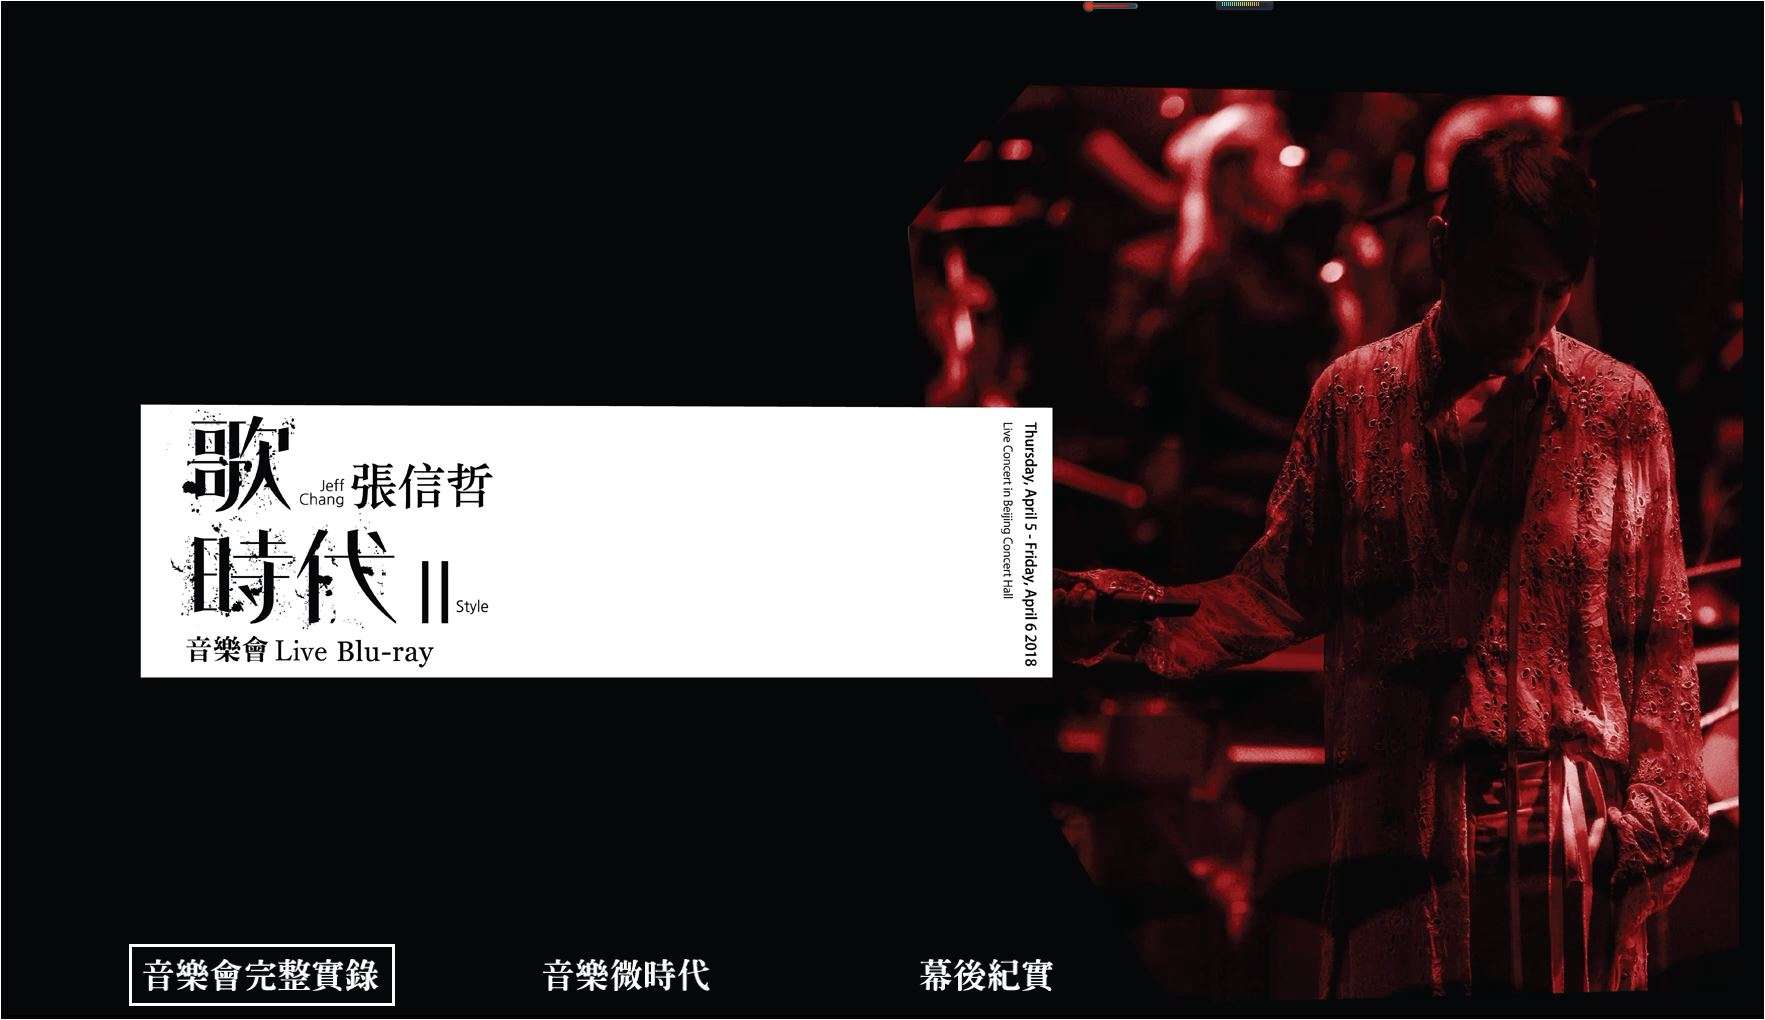 張信哲 <歌 時代Ⅱ> 2018音樂會 Jeff Chang Style 2018 Live 1080i Blu-ray AVC TrueHD 5.1 - CHDBits [36.20 GB]-1.jpg